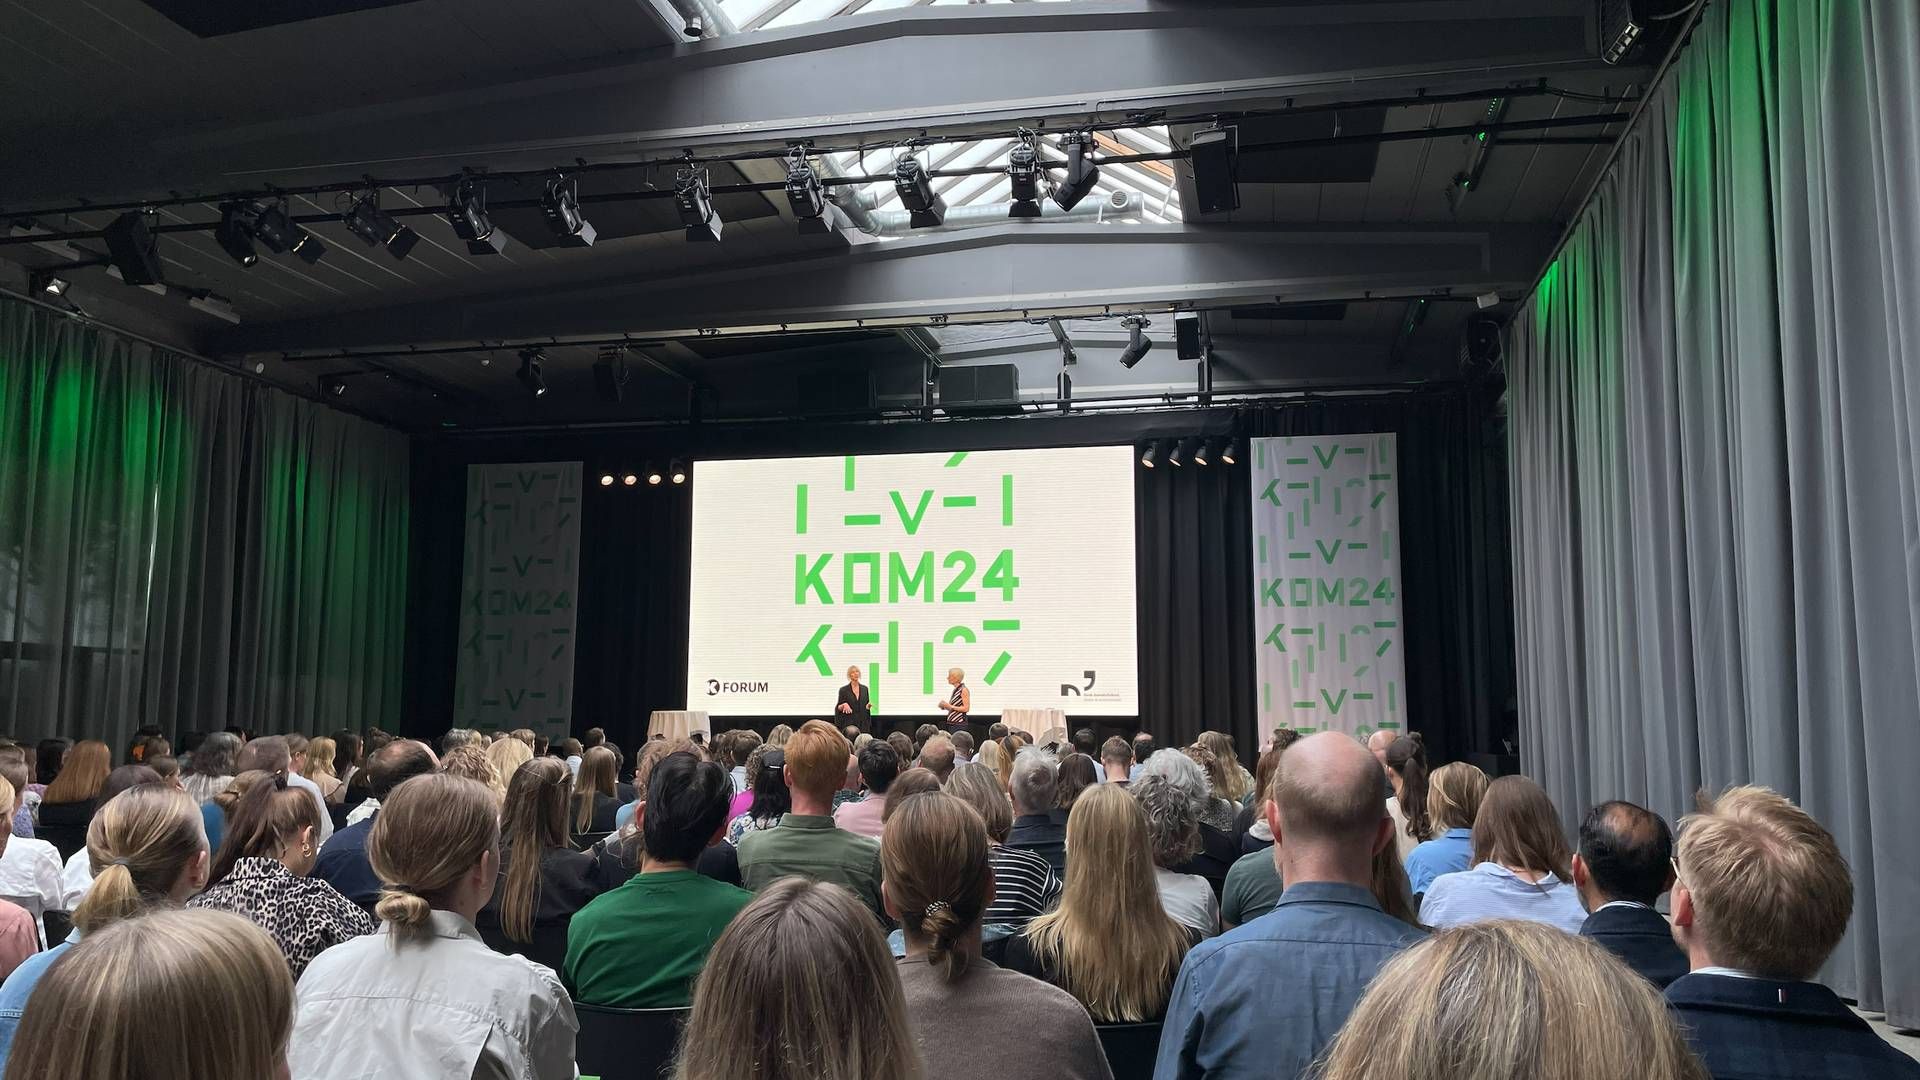 Omkring 300 k-folk er samlet på The Plant, hvor årets KOM24 løber af stablen. | Foto: Nanna Elmstrøm